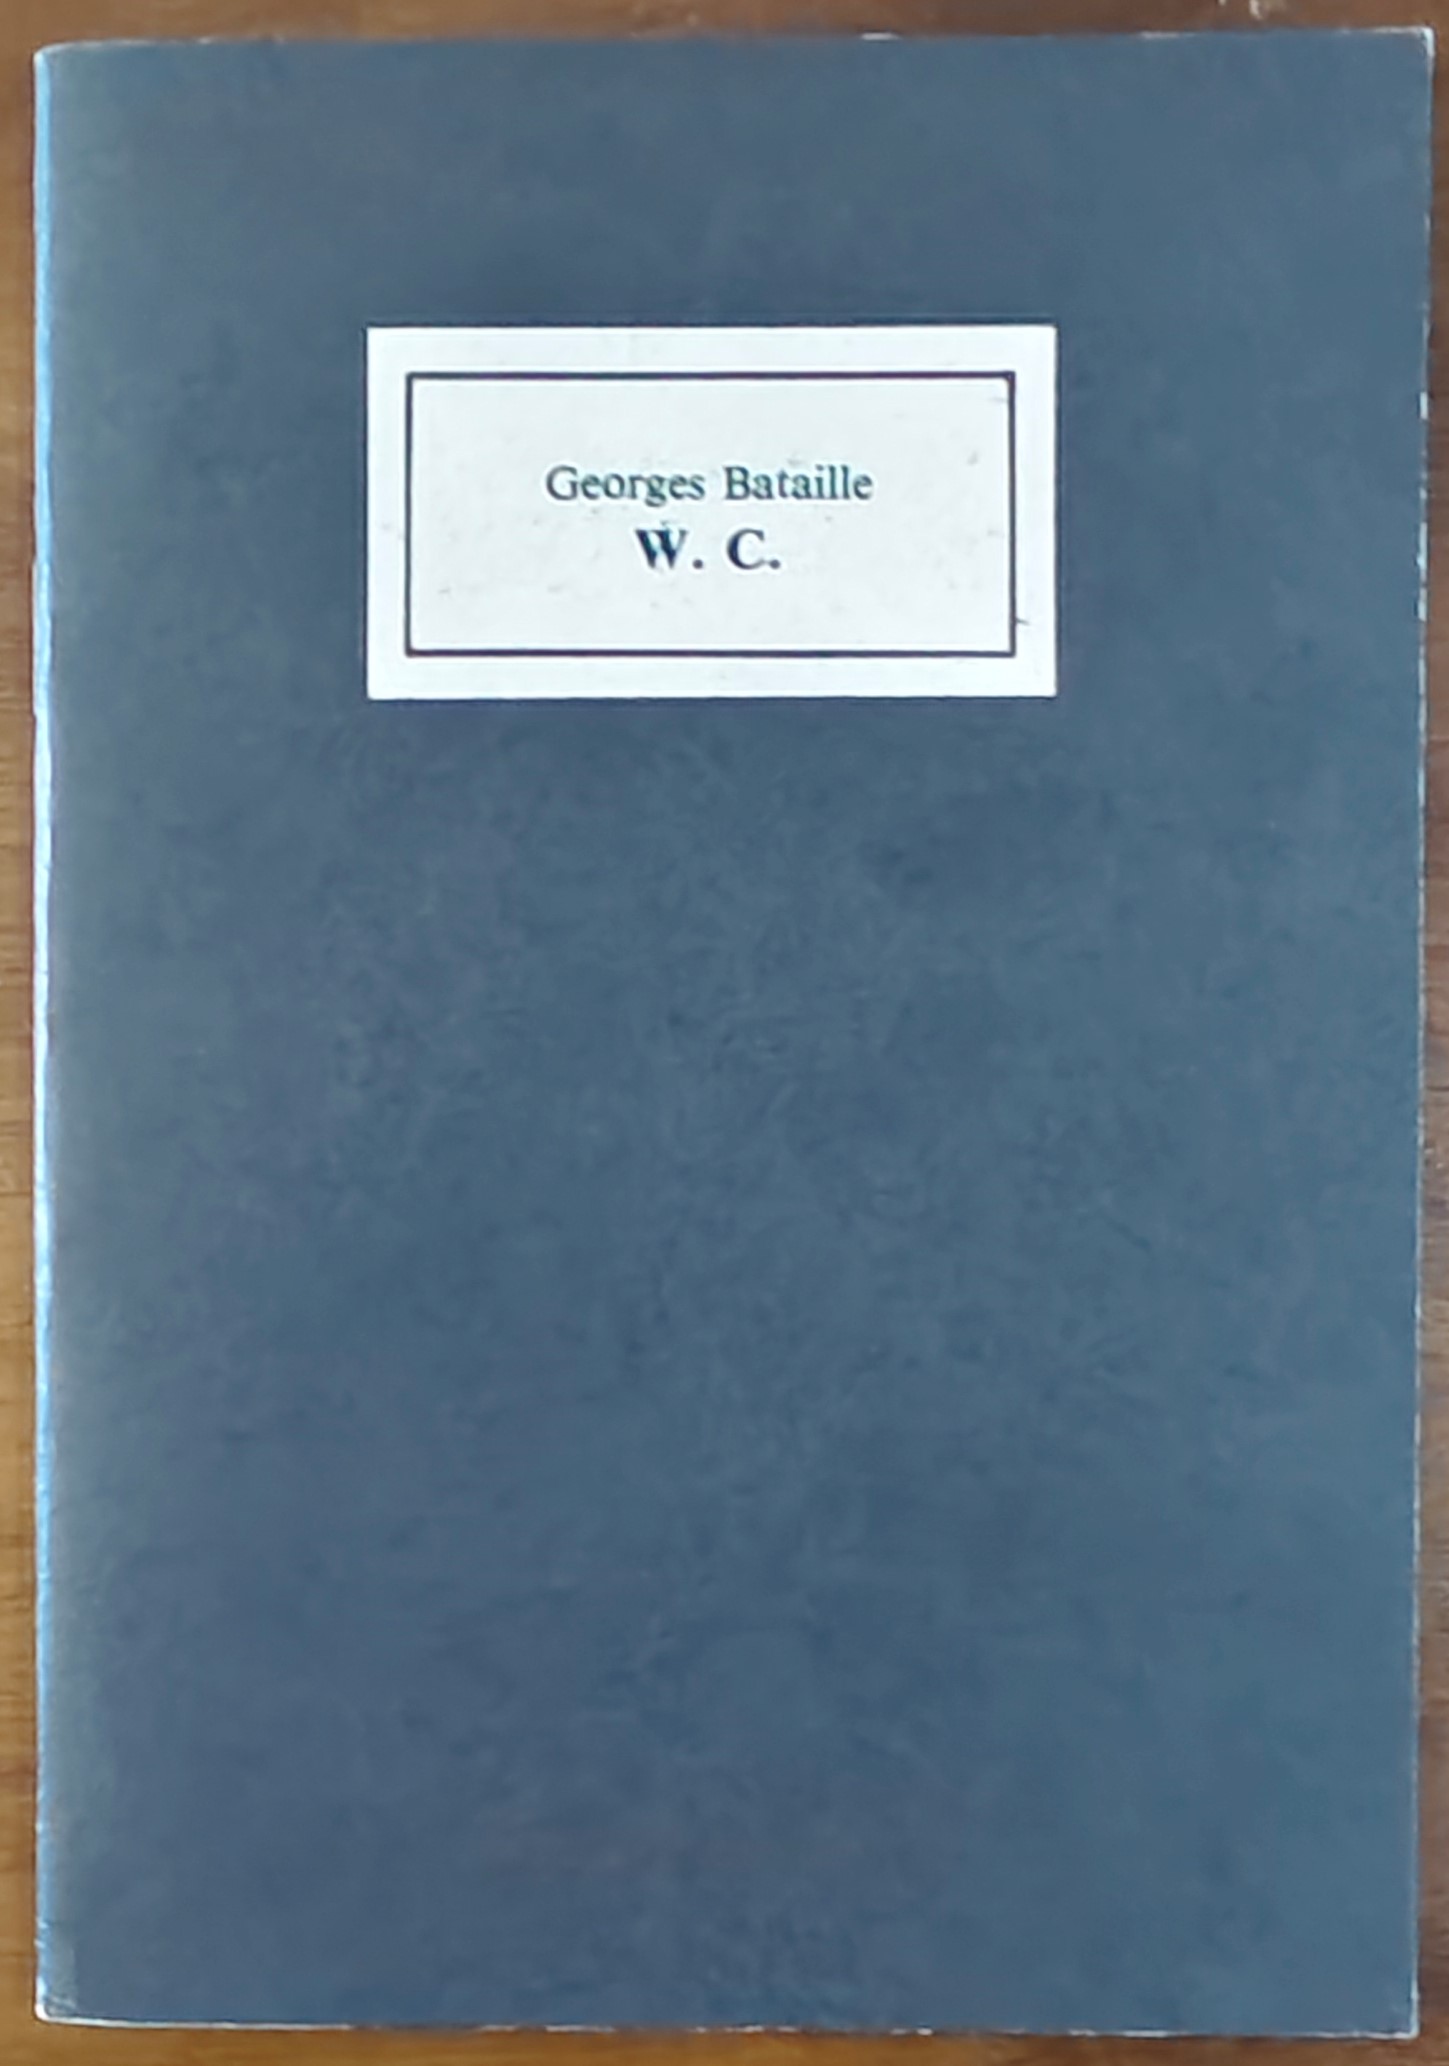 W.C. di Georges Bataille: il clamoroso falso editoriale delle misteriose Edizioni del sole nero (circa 1973)